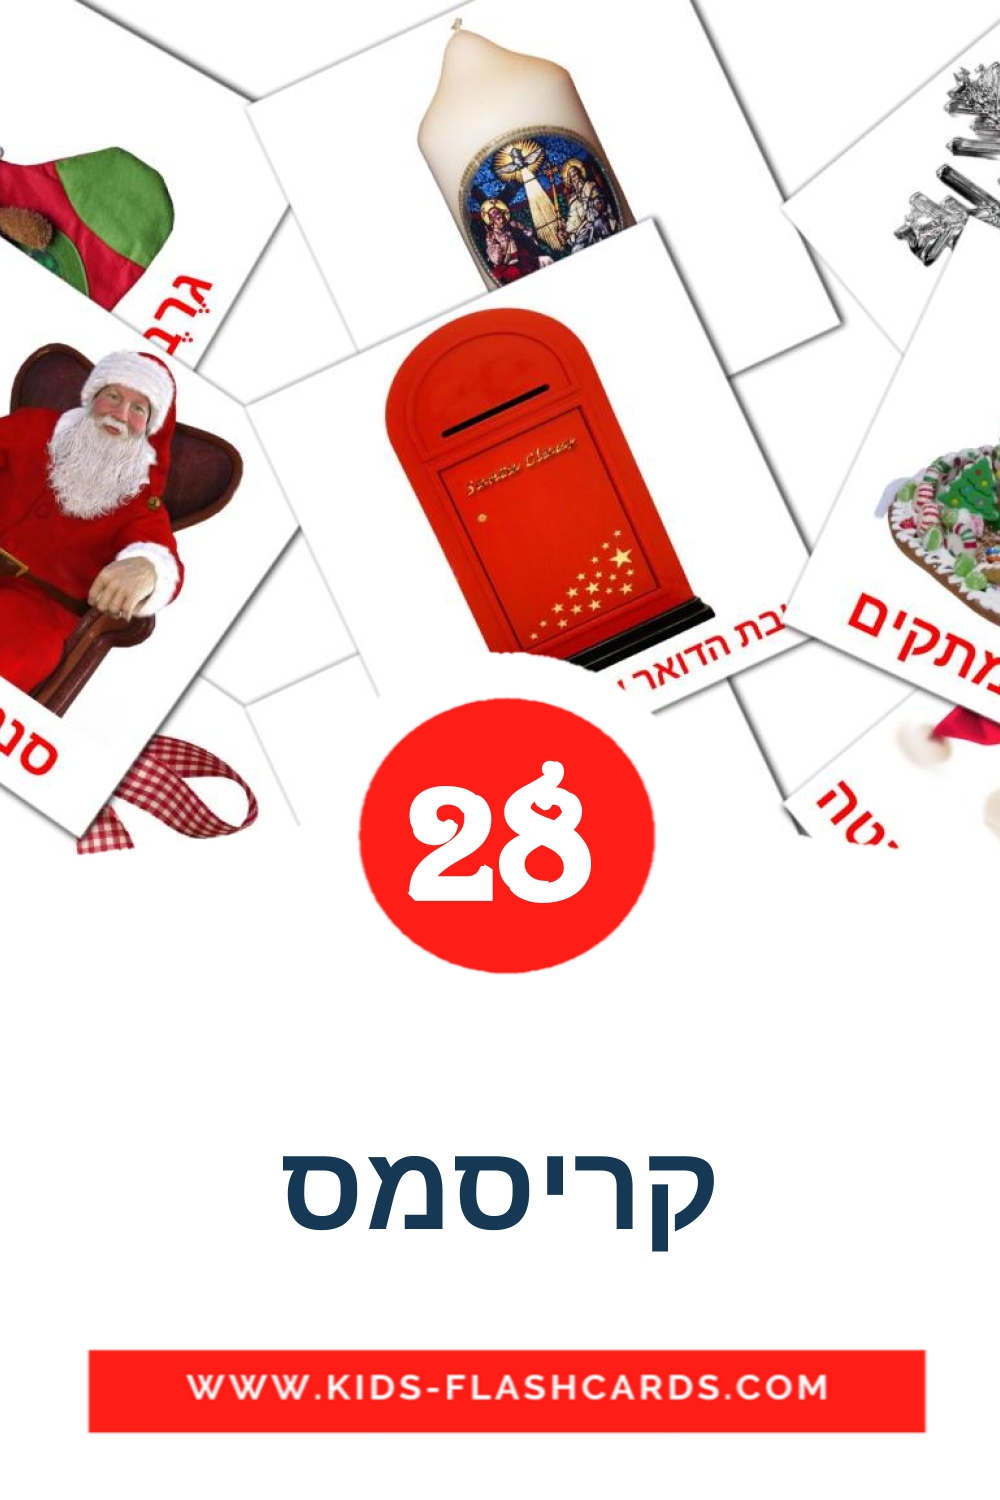 28 carte illustrate di קריסמס per la scuola materna in ebraico